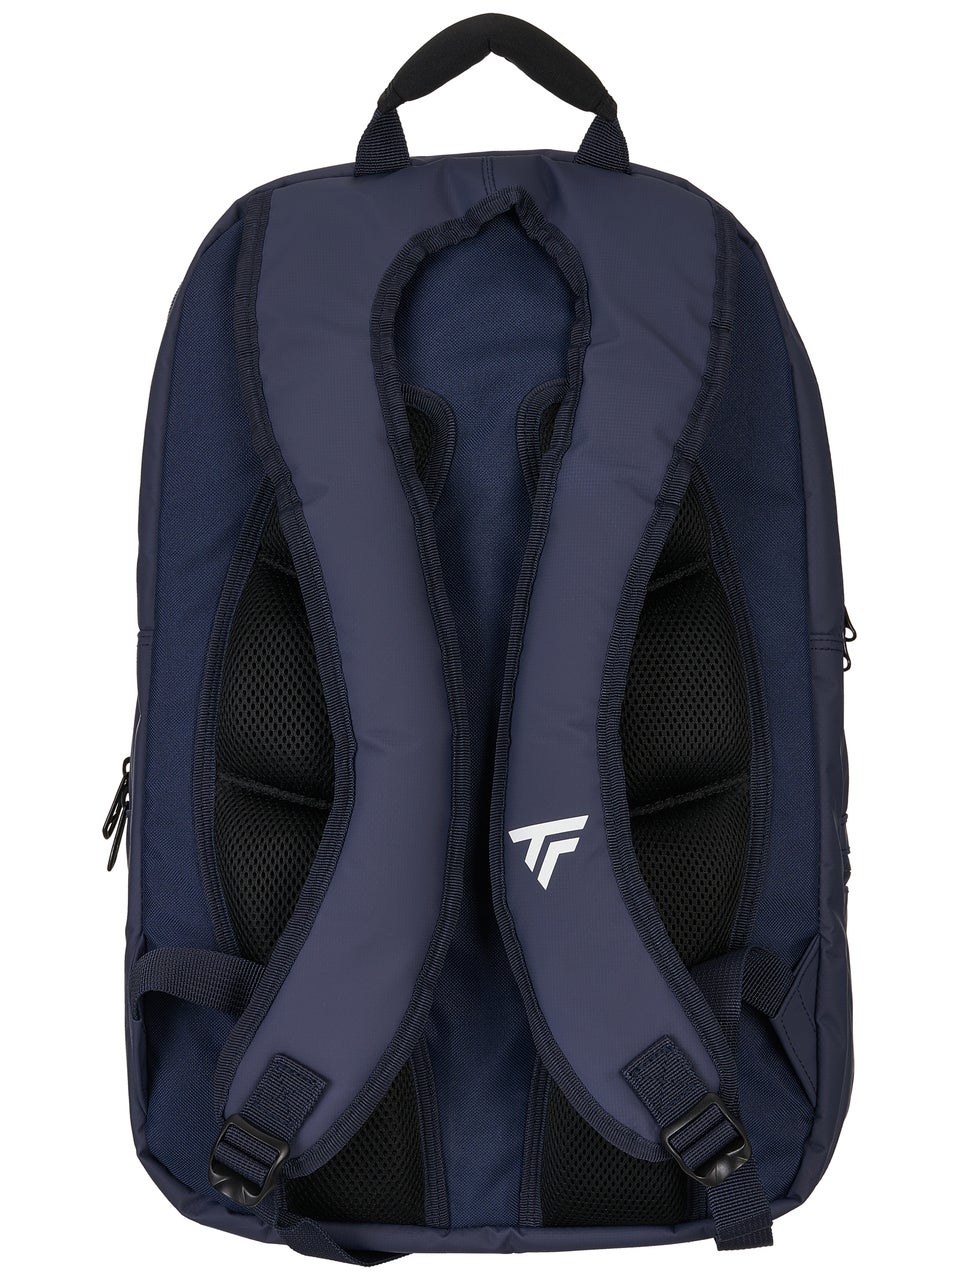 Tecnifibre Tour Endurance Navy Backpack